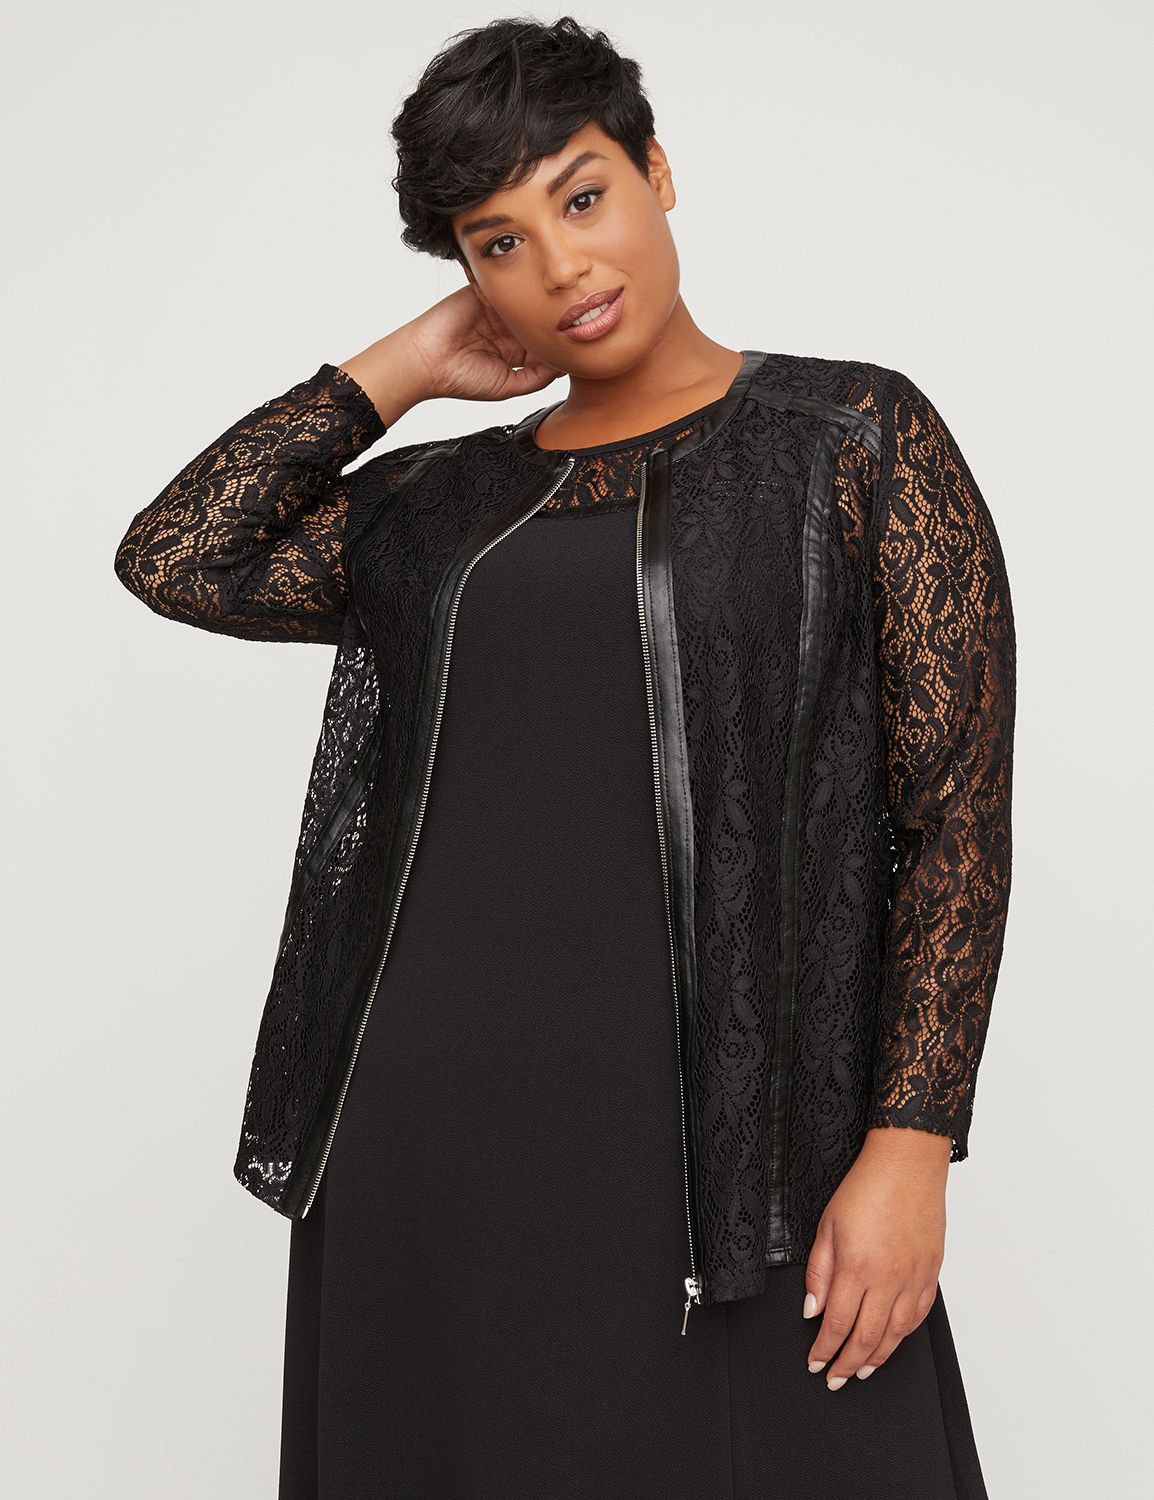 Black Label Luxury Plus Size Clothing | Catherines